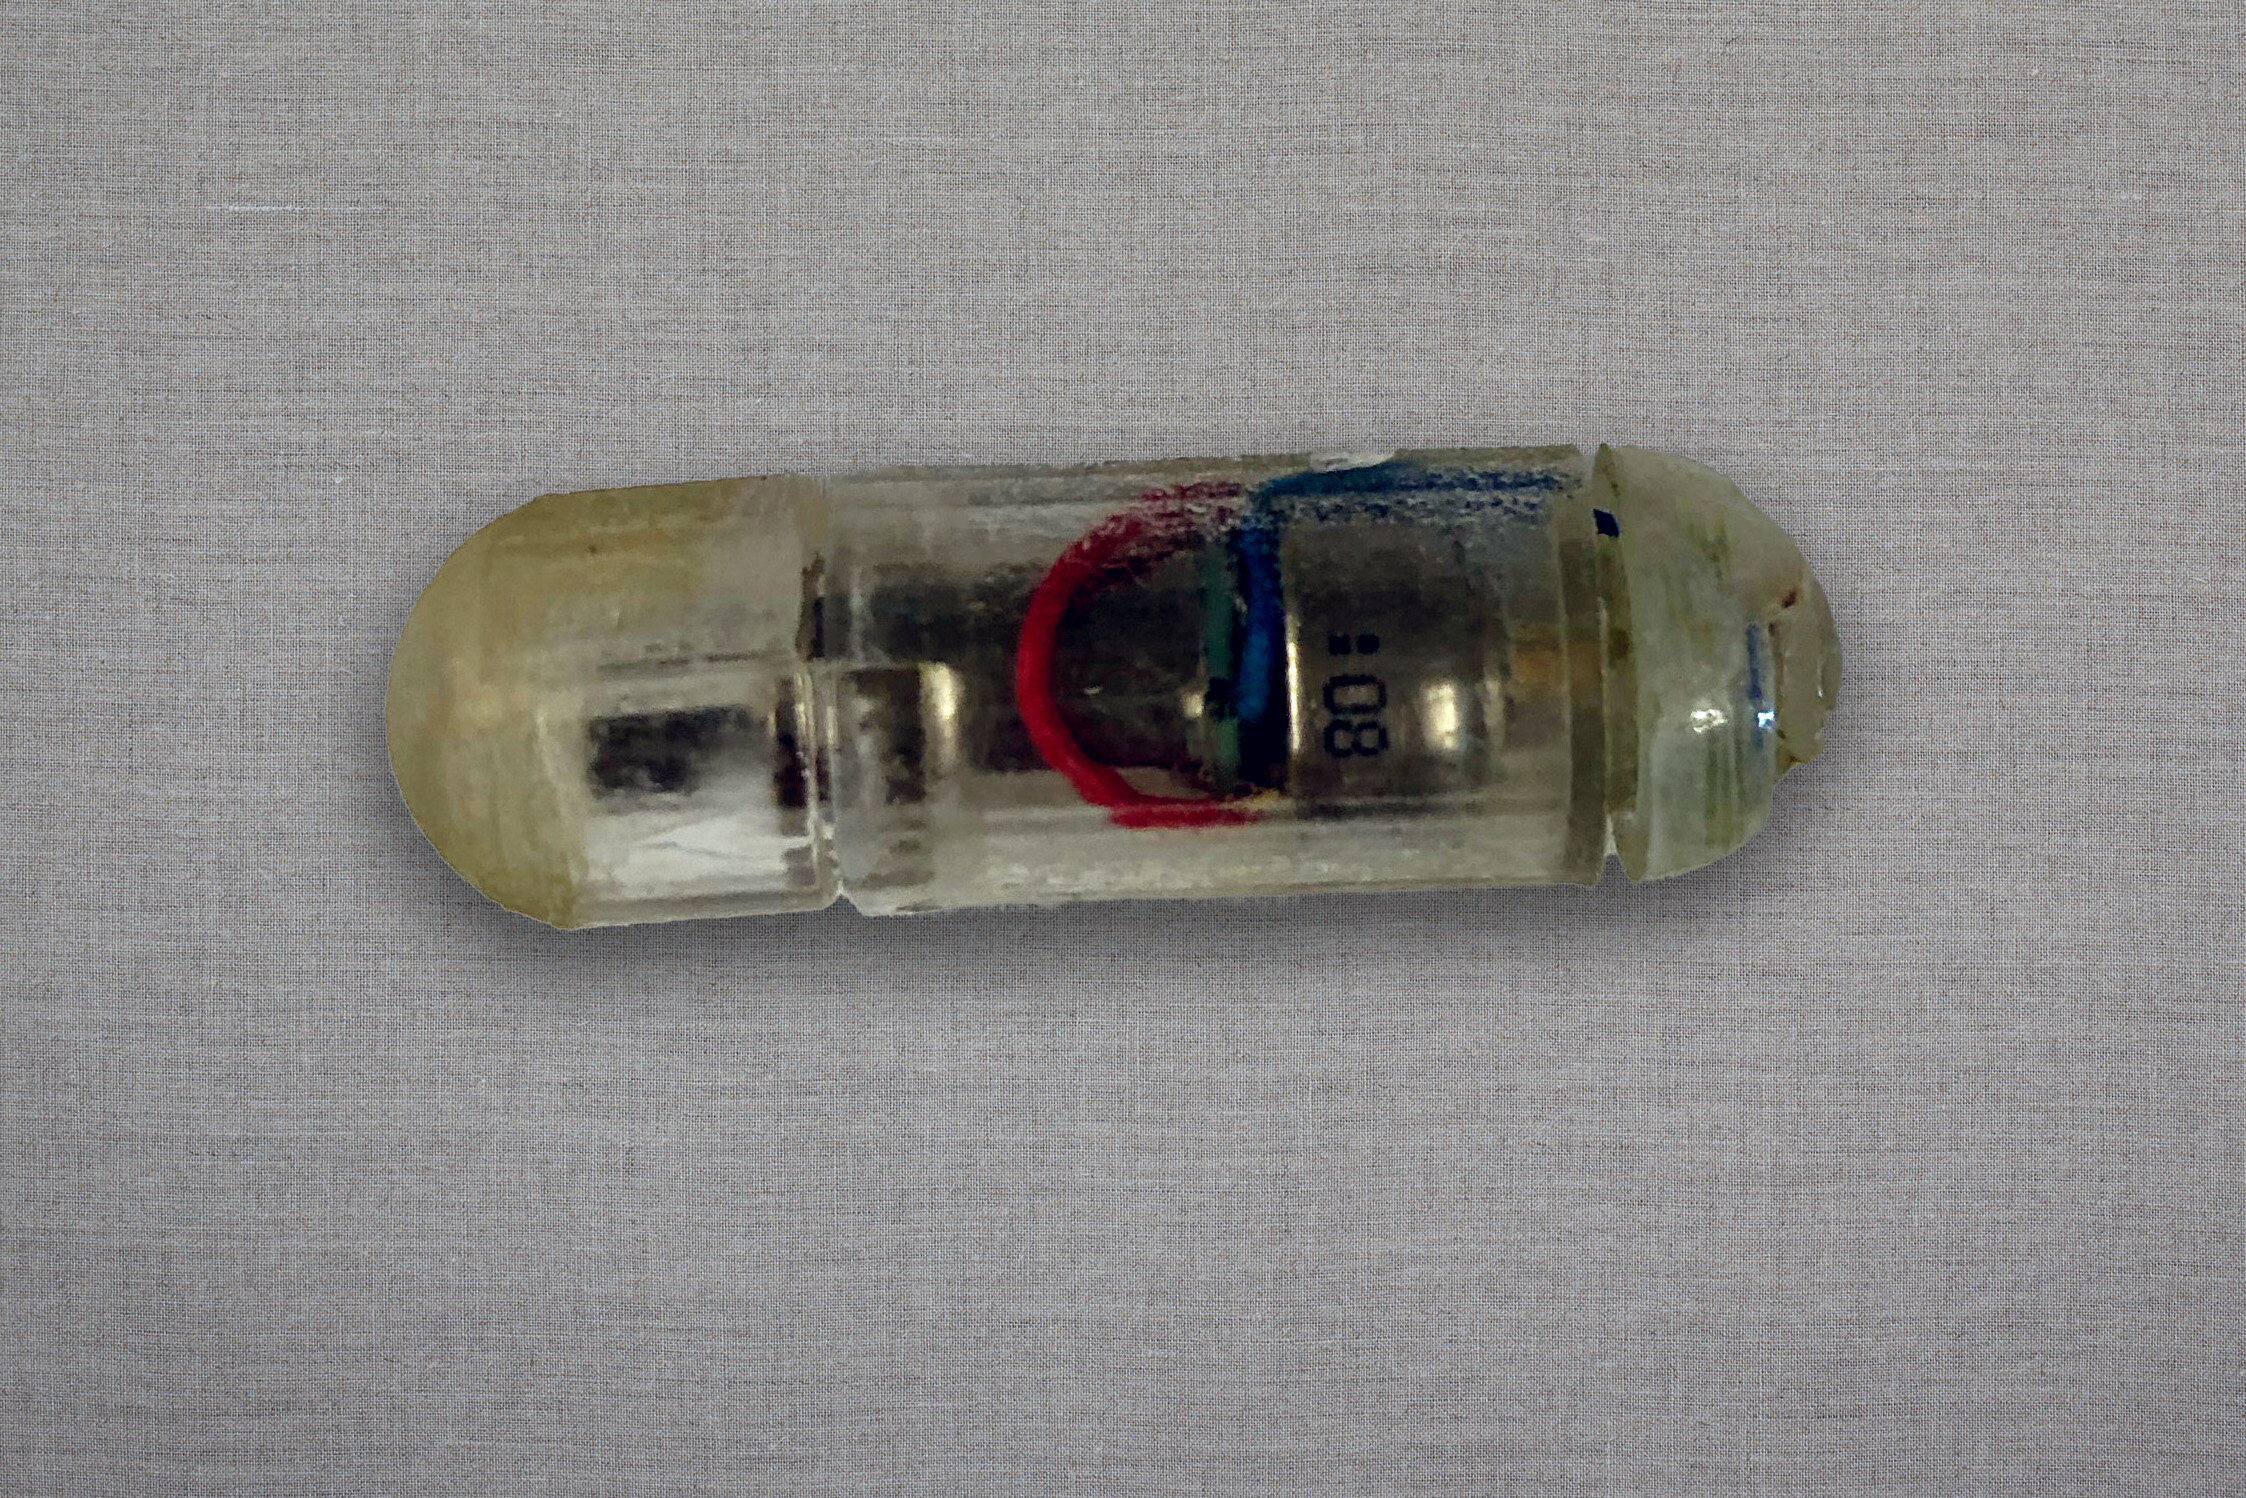 Gli ingegneri hanno sviluppato una capsula vibrante e ingeribile che potrebbe aiutare a curare l'obesità